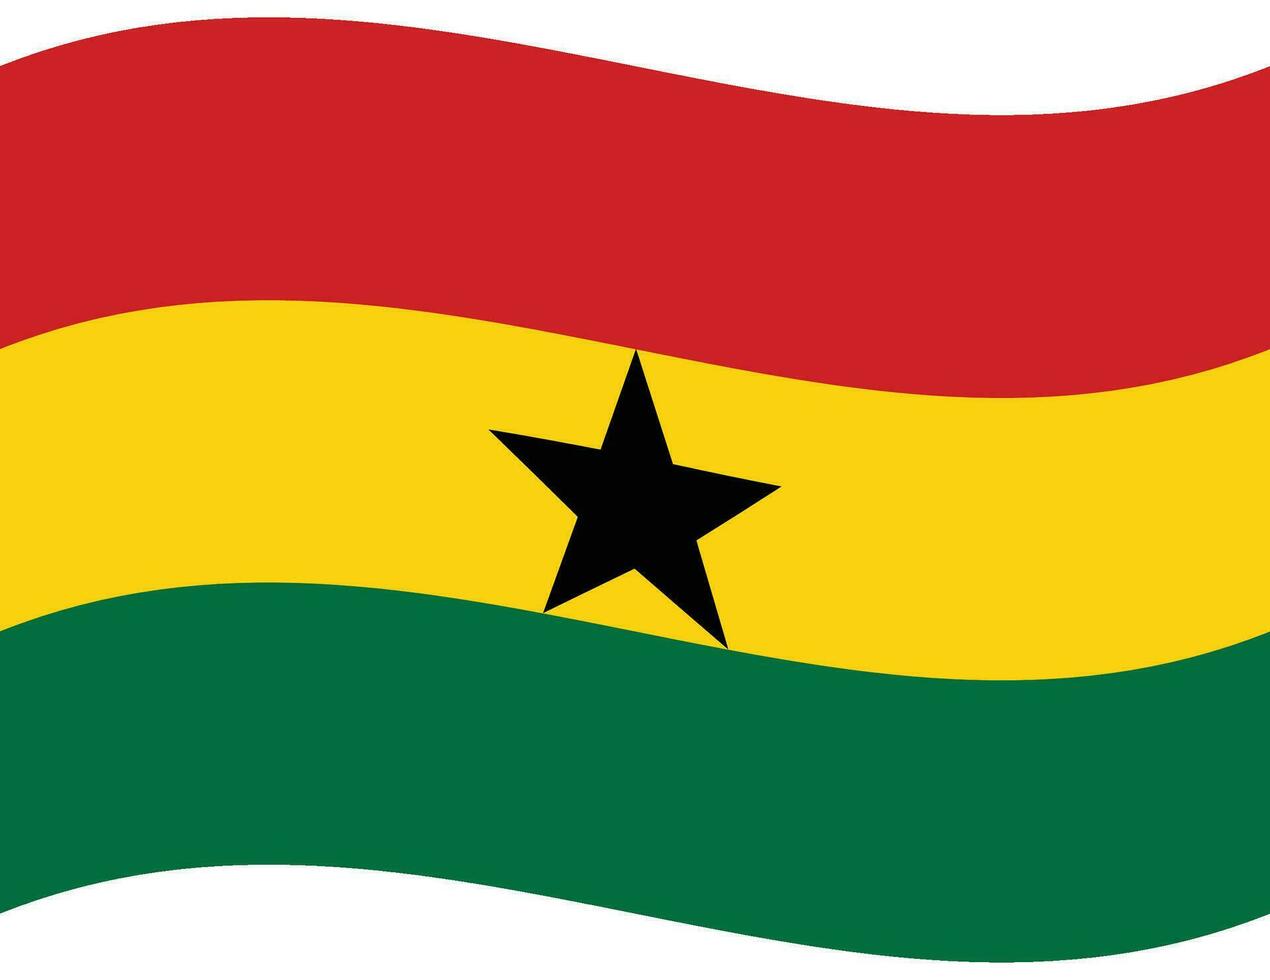 Ghana flag. Flag of Ghana. Ghana flag wave vector